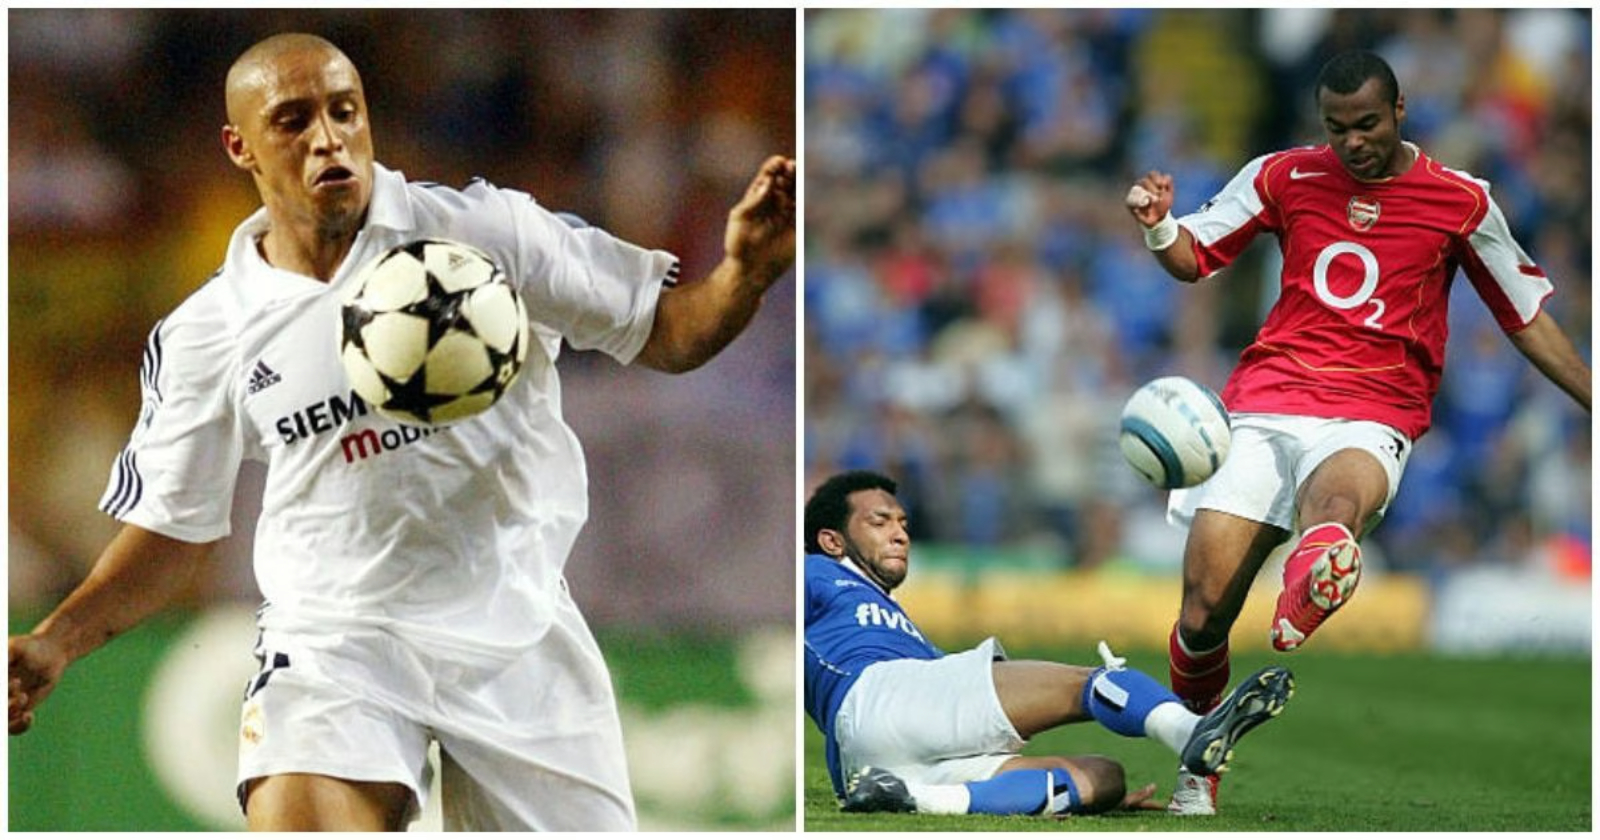 Ashley Cole contre Roberto Carlos : Qui était le meilleur arrière gauche ?